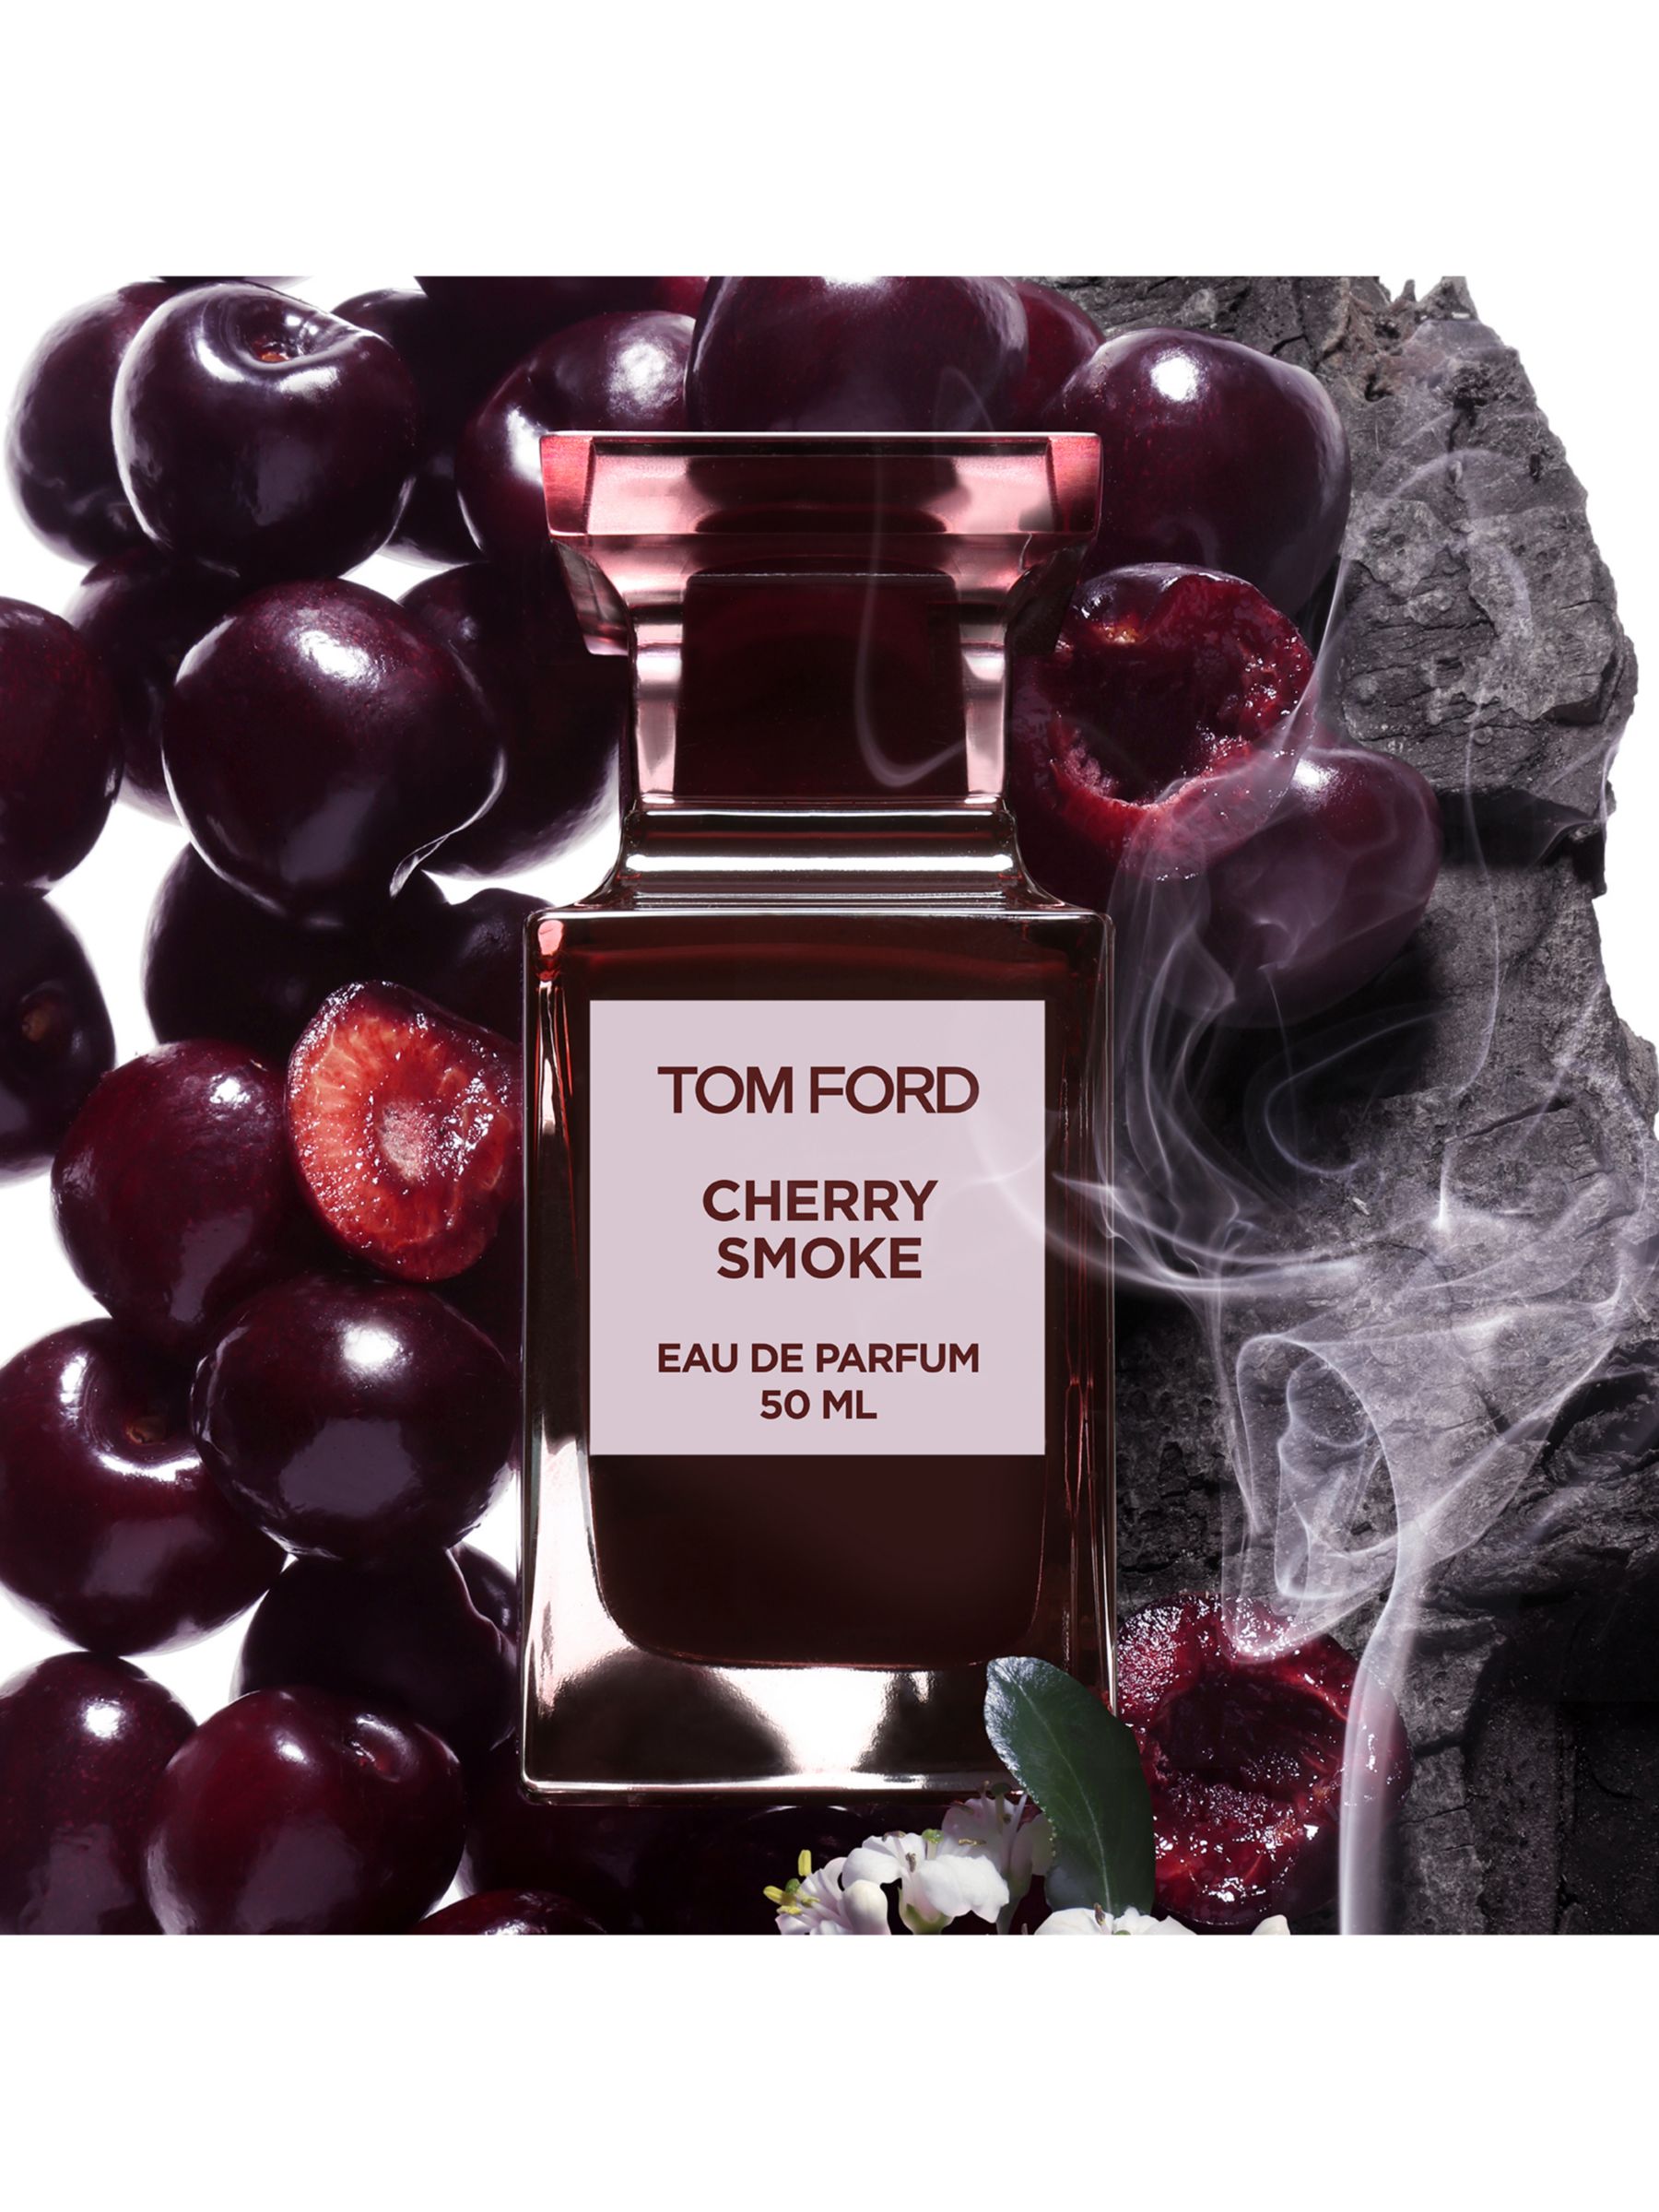 TOM FORD Cherry Smoke Eau de Parfum, 50ml 2